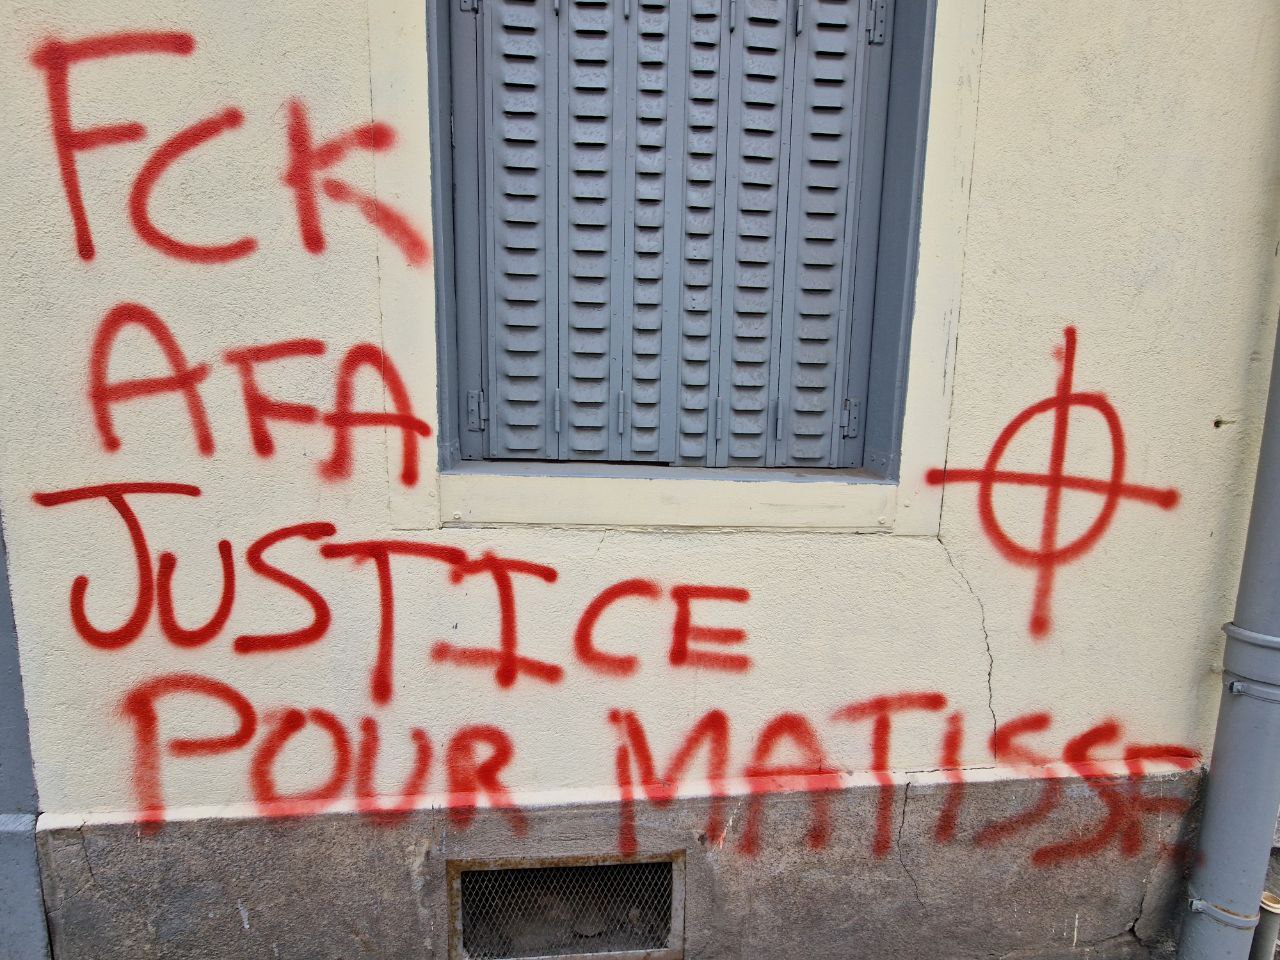 Détail des graffitis ayant visé les locaux de radio BIP/média 25 dans la nuit du 3 au 4 mai 2024, reprenant notamment le symbole de la croix celtique et un message "FCK AFA JUSTICE POUR MATISSE"